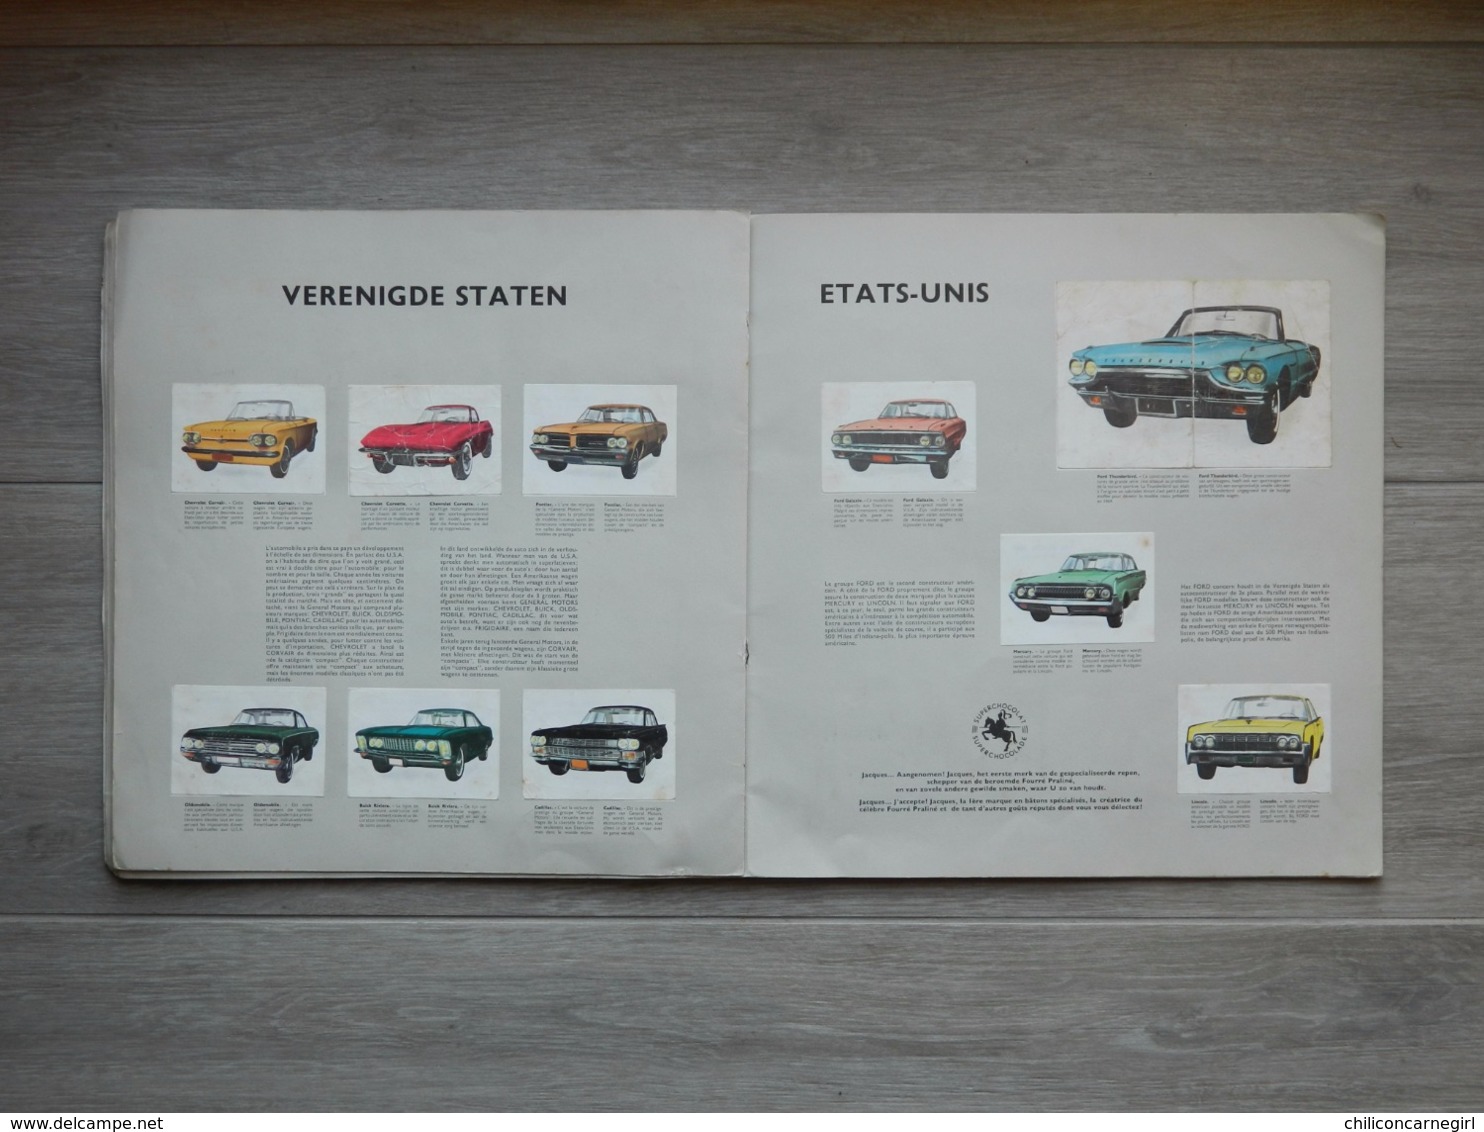 Album JACQUES - De auto's in de wereld - Les autos dans le monde 1964 - Ford - Ferrari - Citroen - Simca - Volkswagen